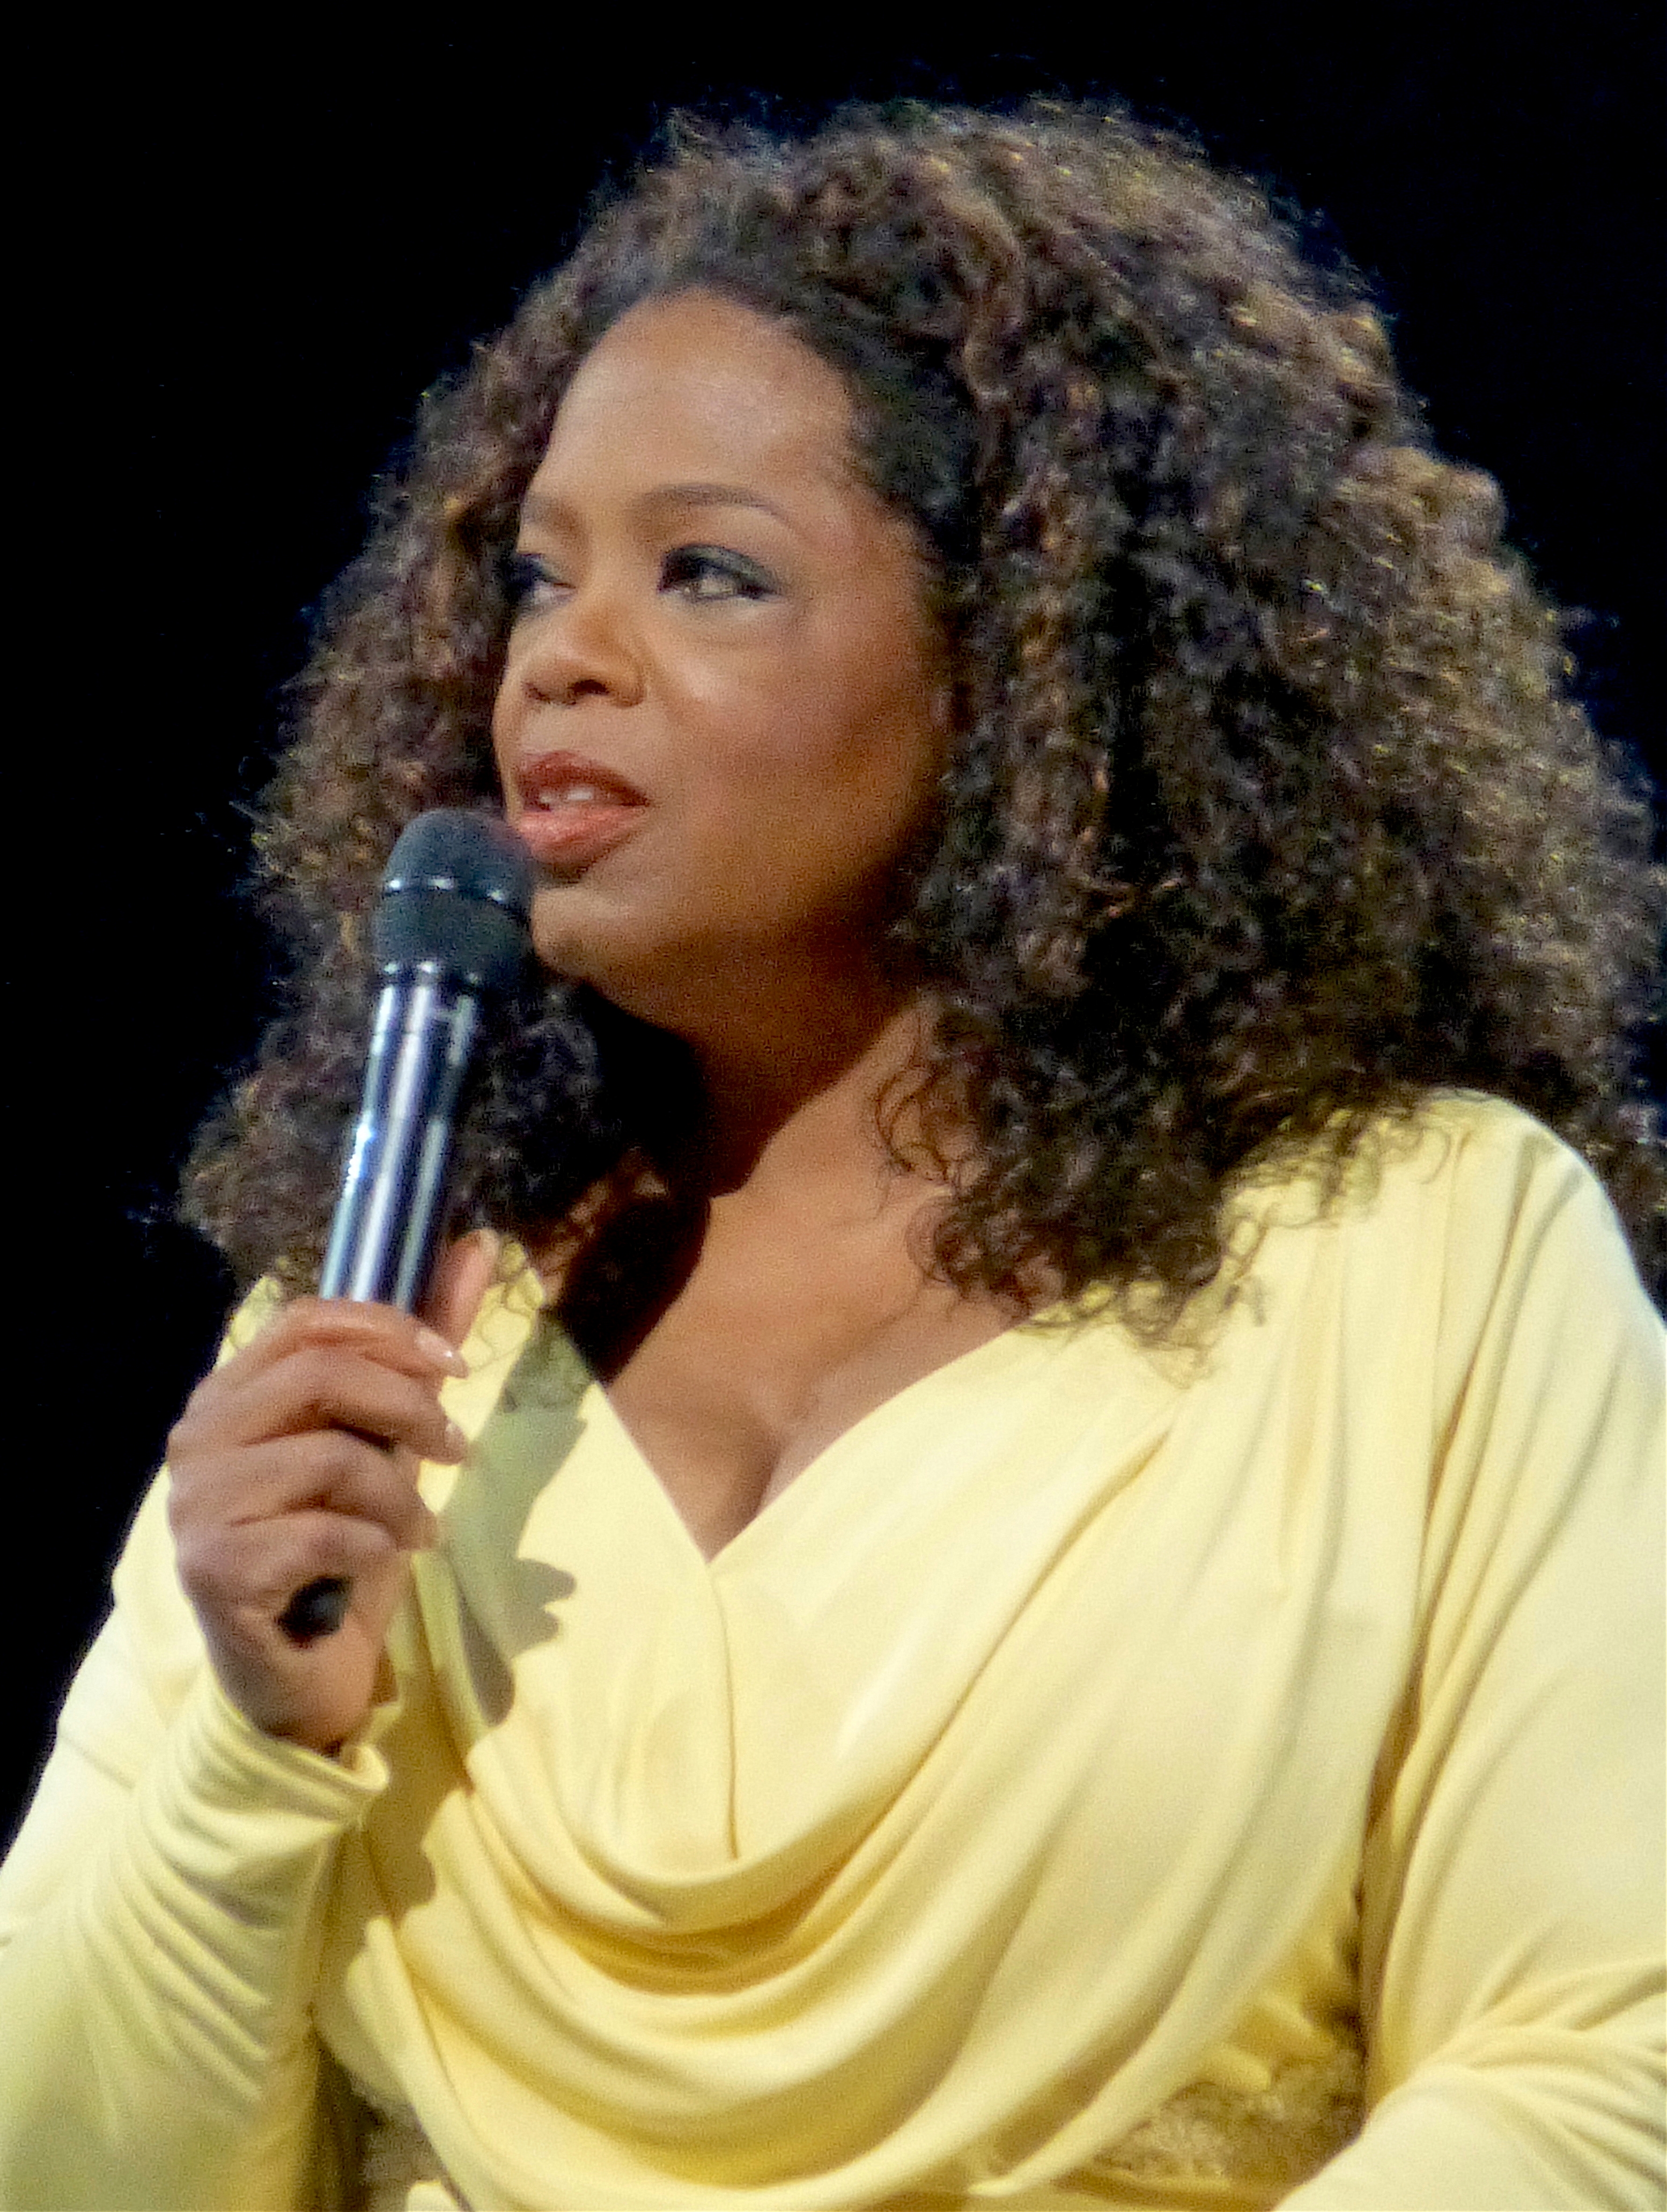 auteur Oprah Winfrey de la citation Être reconnaissant pour ce que vous avez; vous finirez par en avoir plus.